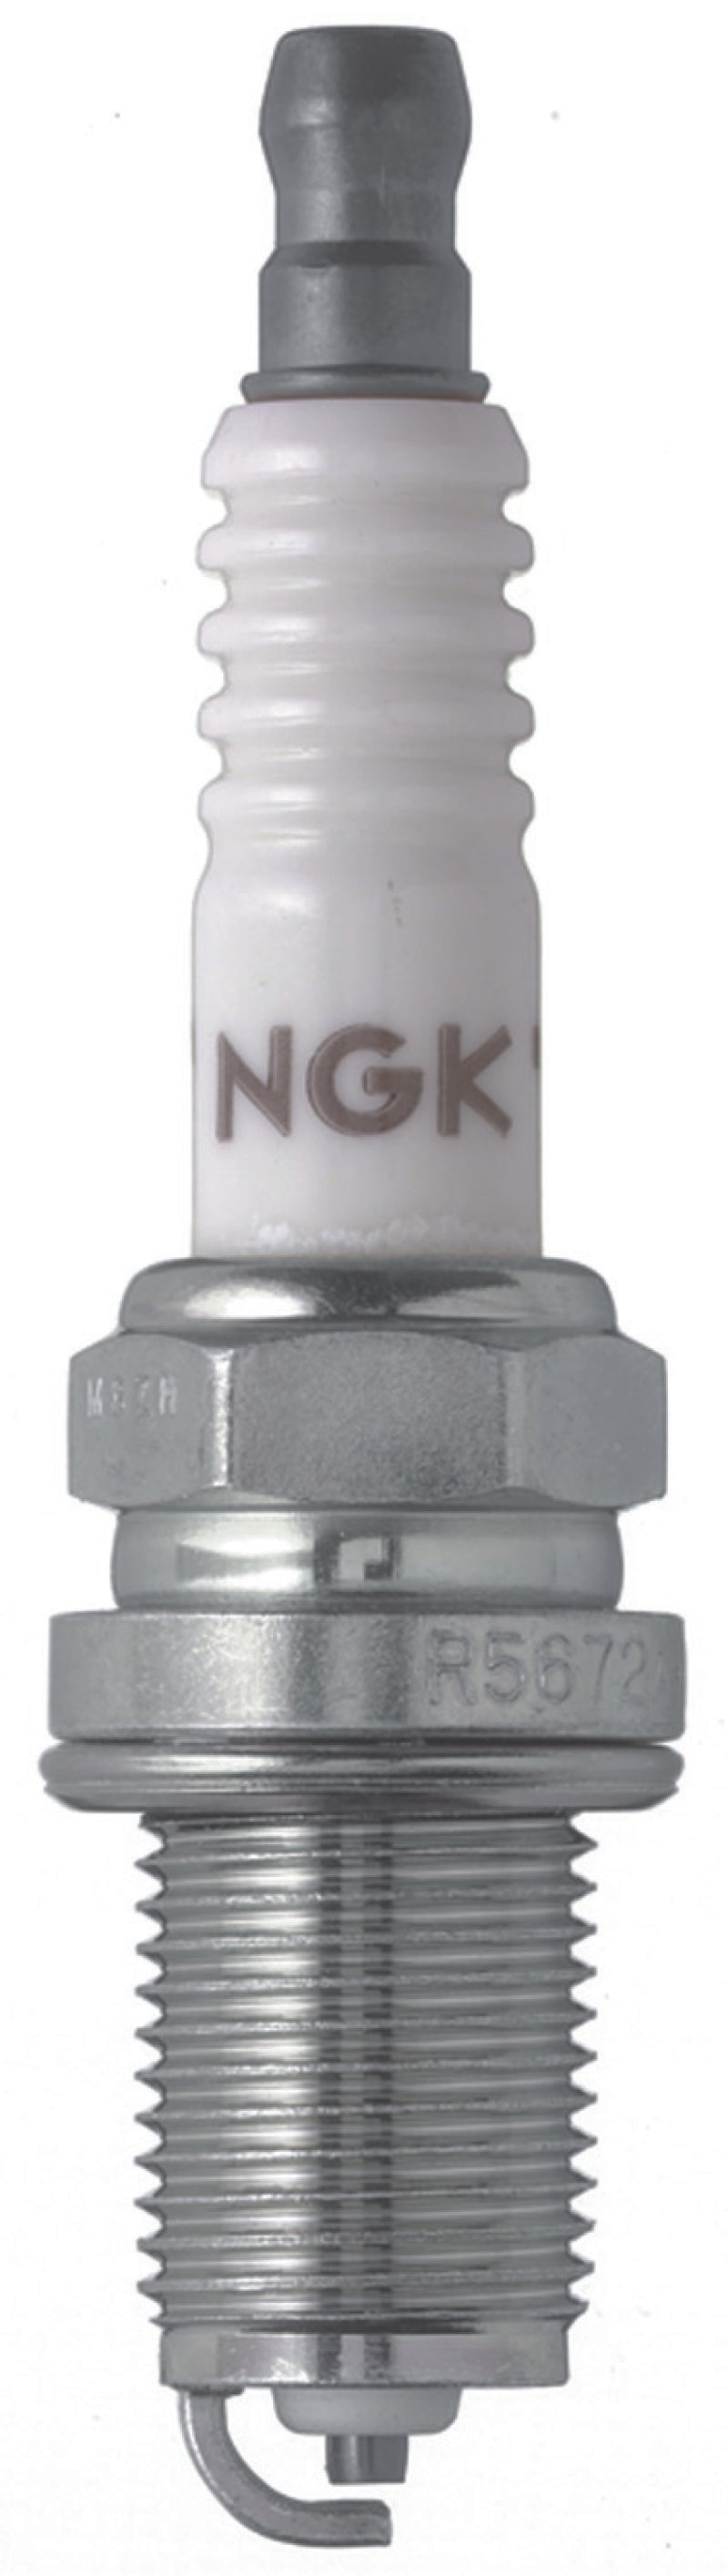 NGK Racing Spark Plug Box of 4 (R5672A-10)